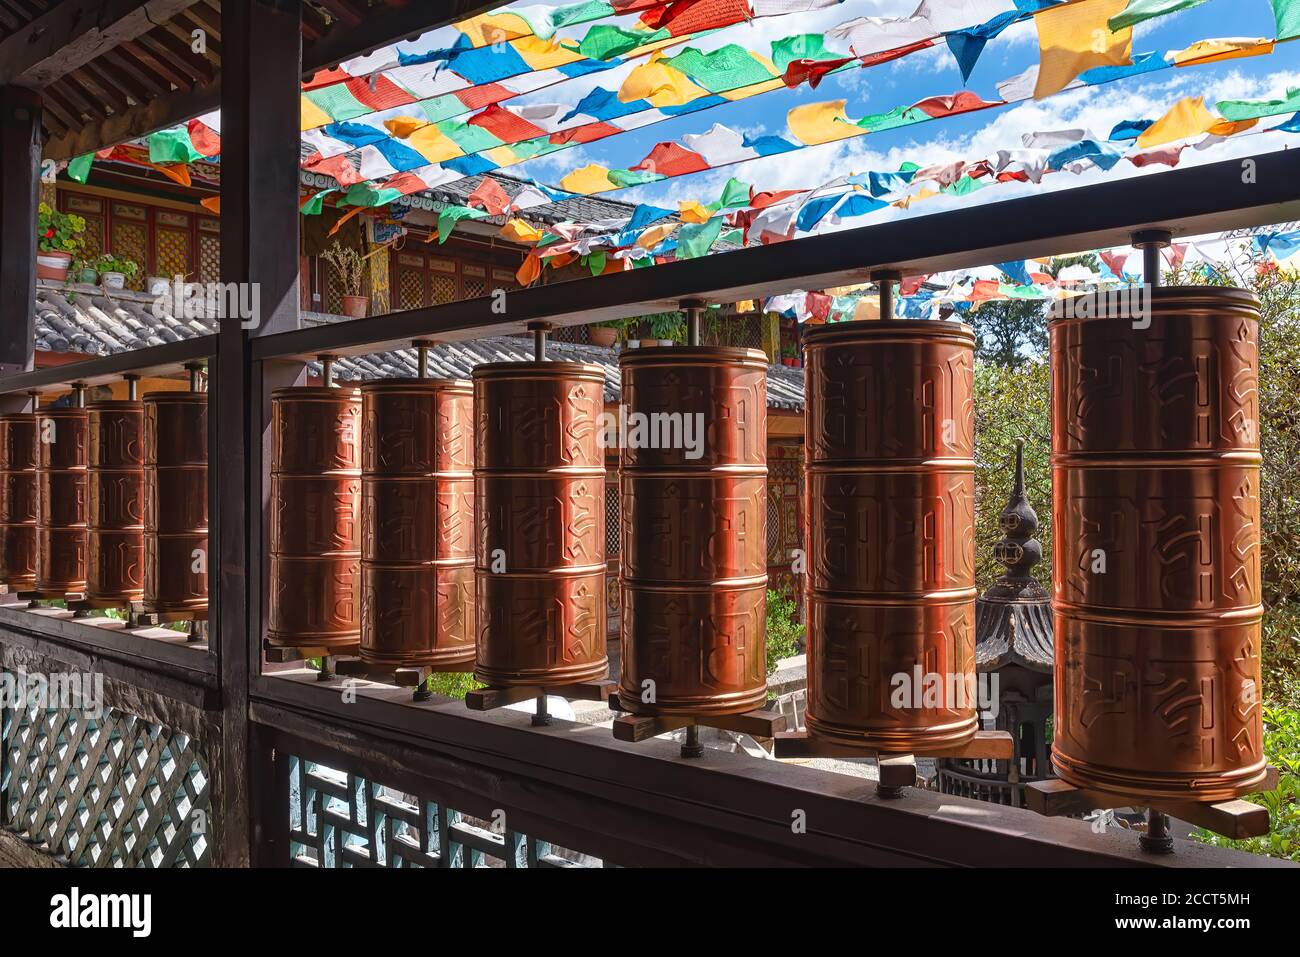 Roues de prière dans le temple de Yufeng près de Lijiang, en Chine. Selon le bouddhisme tibétain tournant une telle roue aura le même effet de prières Banque D'Images